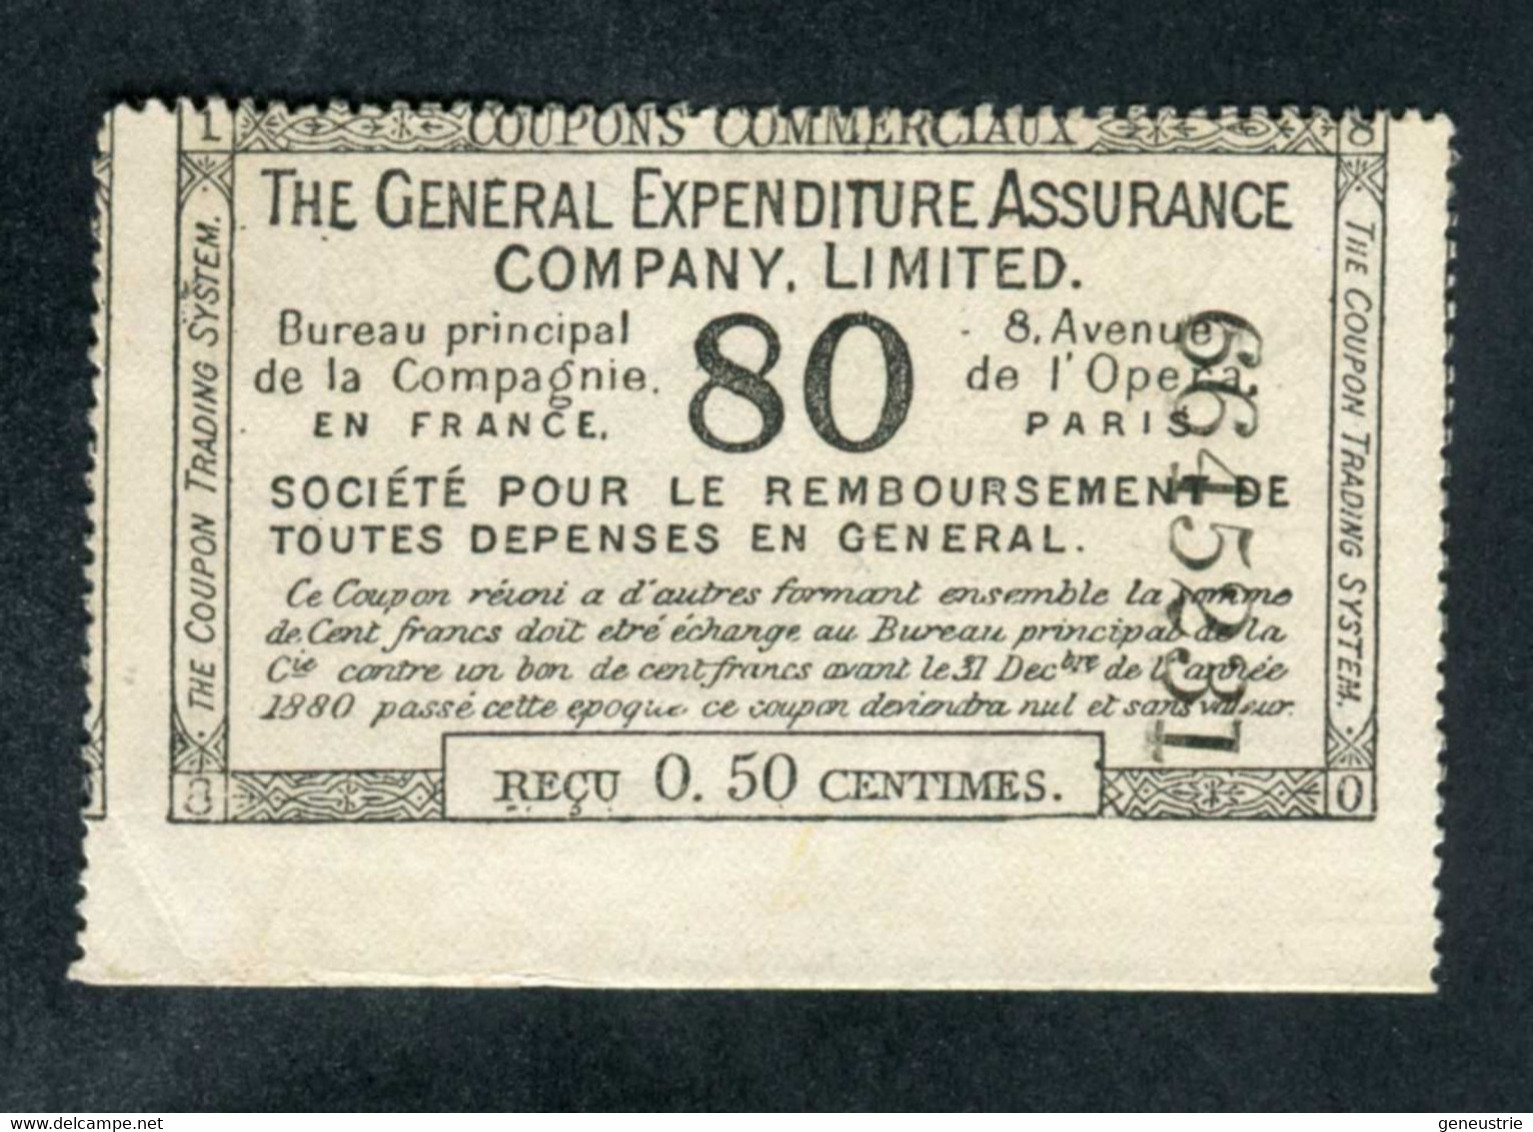 Jeton-papier De Nécessité 1880 "Reçu De 0.50 Centimes - The General Expenditure Assurance Company - Paris" - Monetary /of Necessity